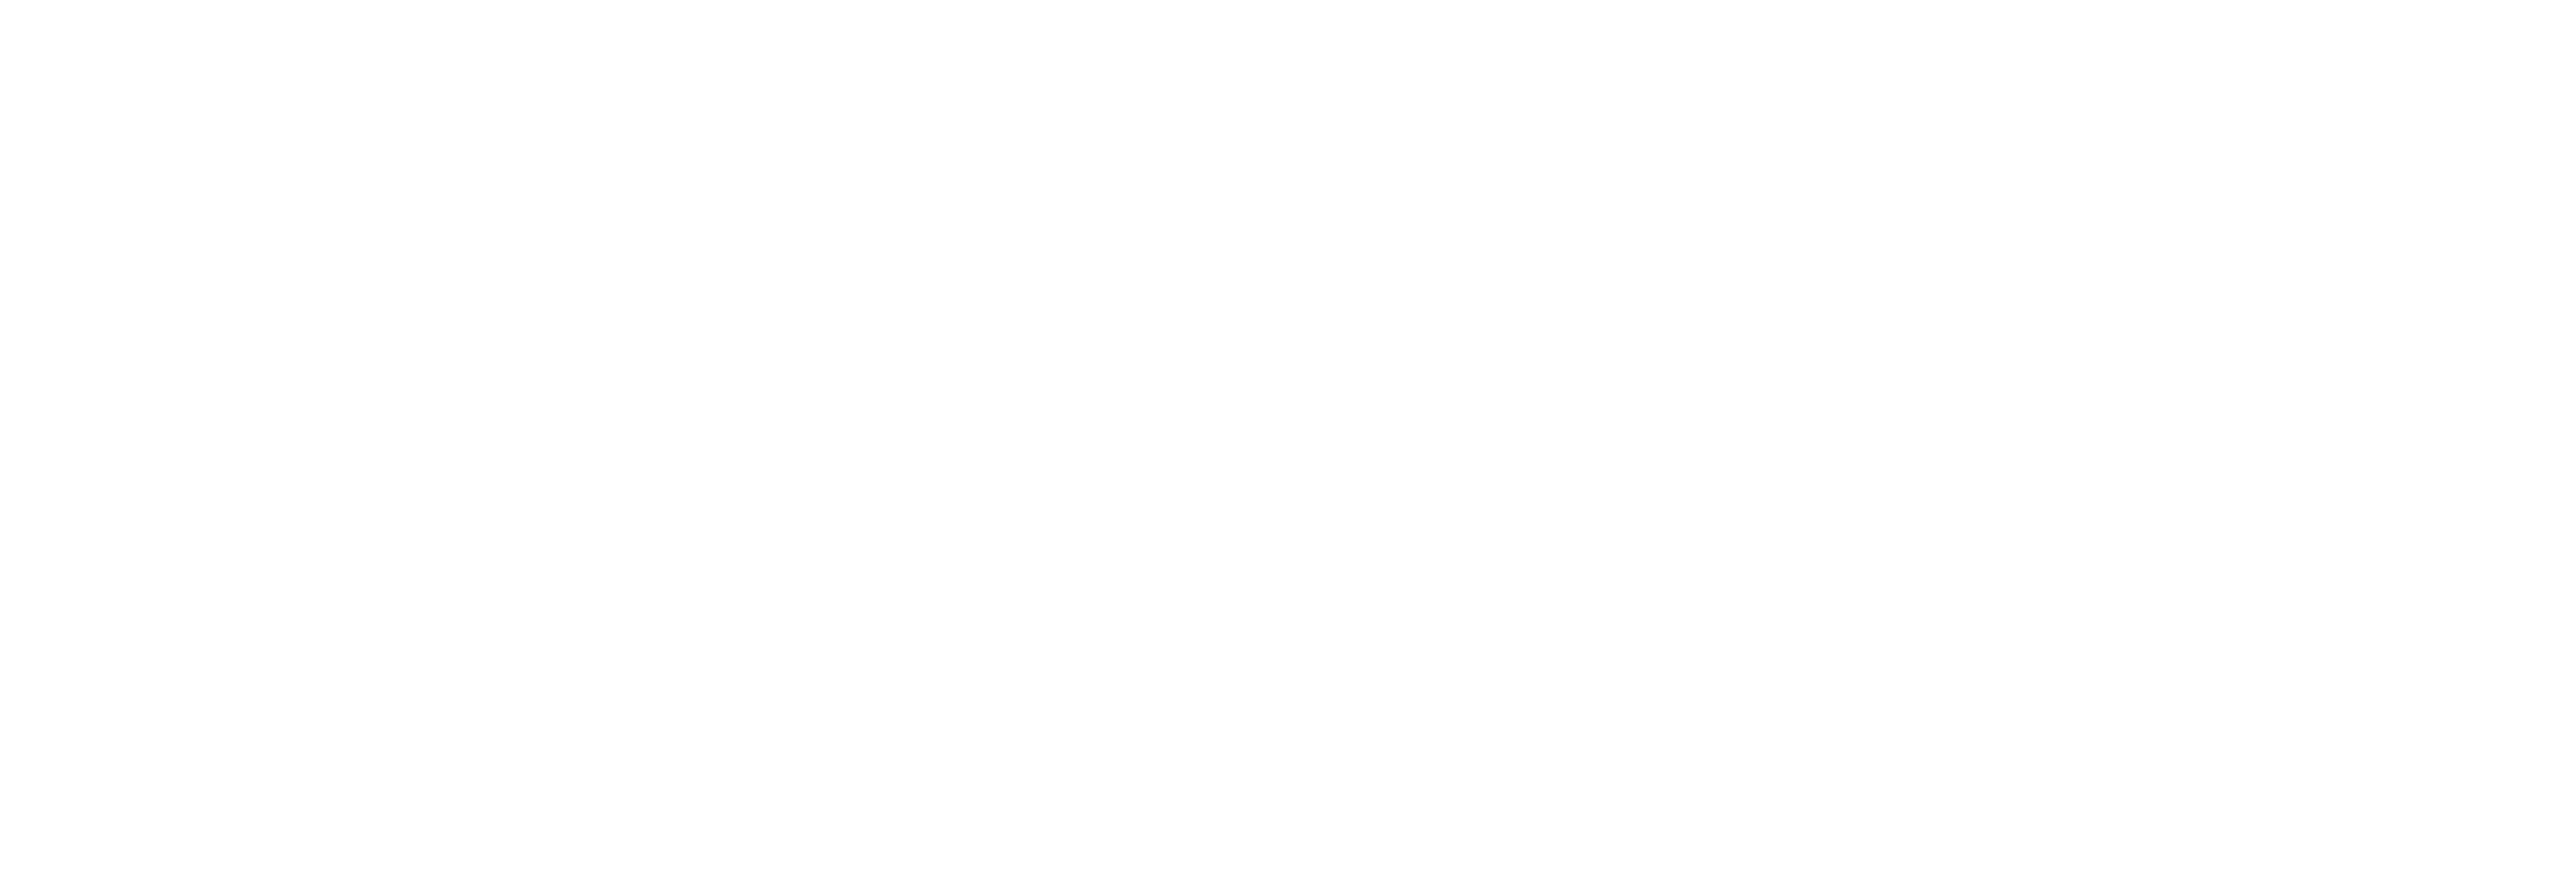 AniCura Den Helder - Pasteurstraat logo